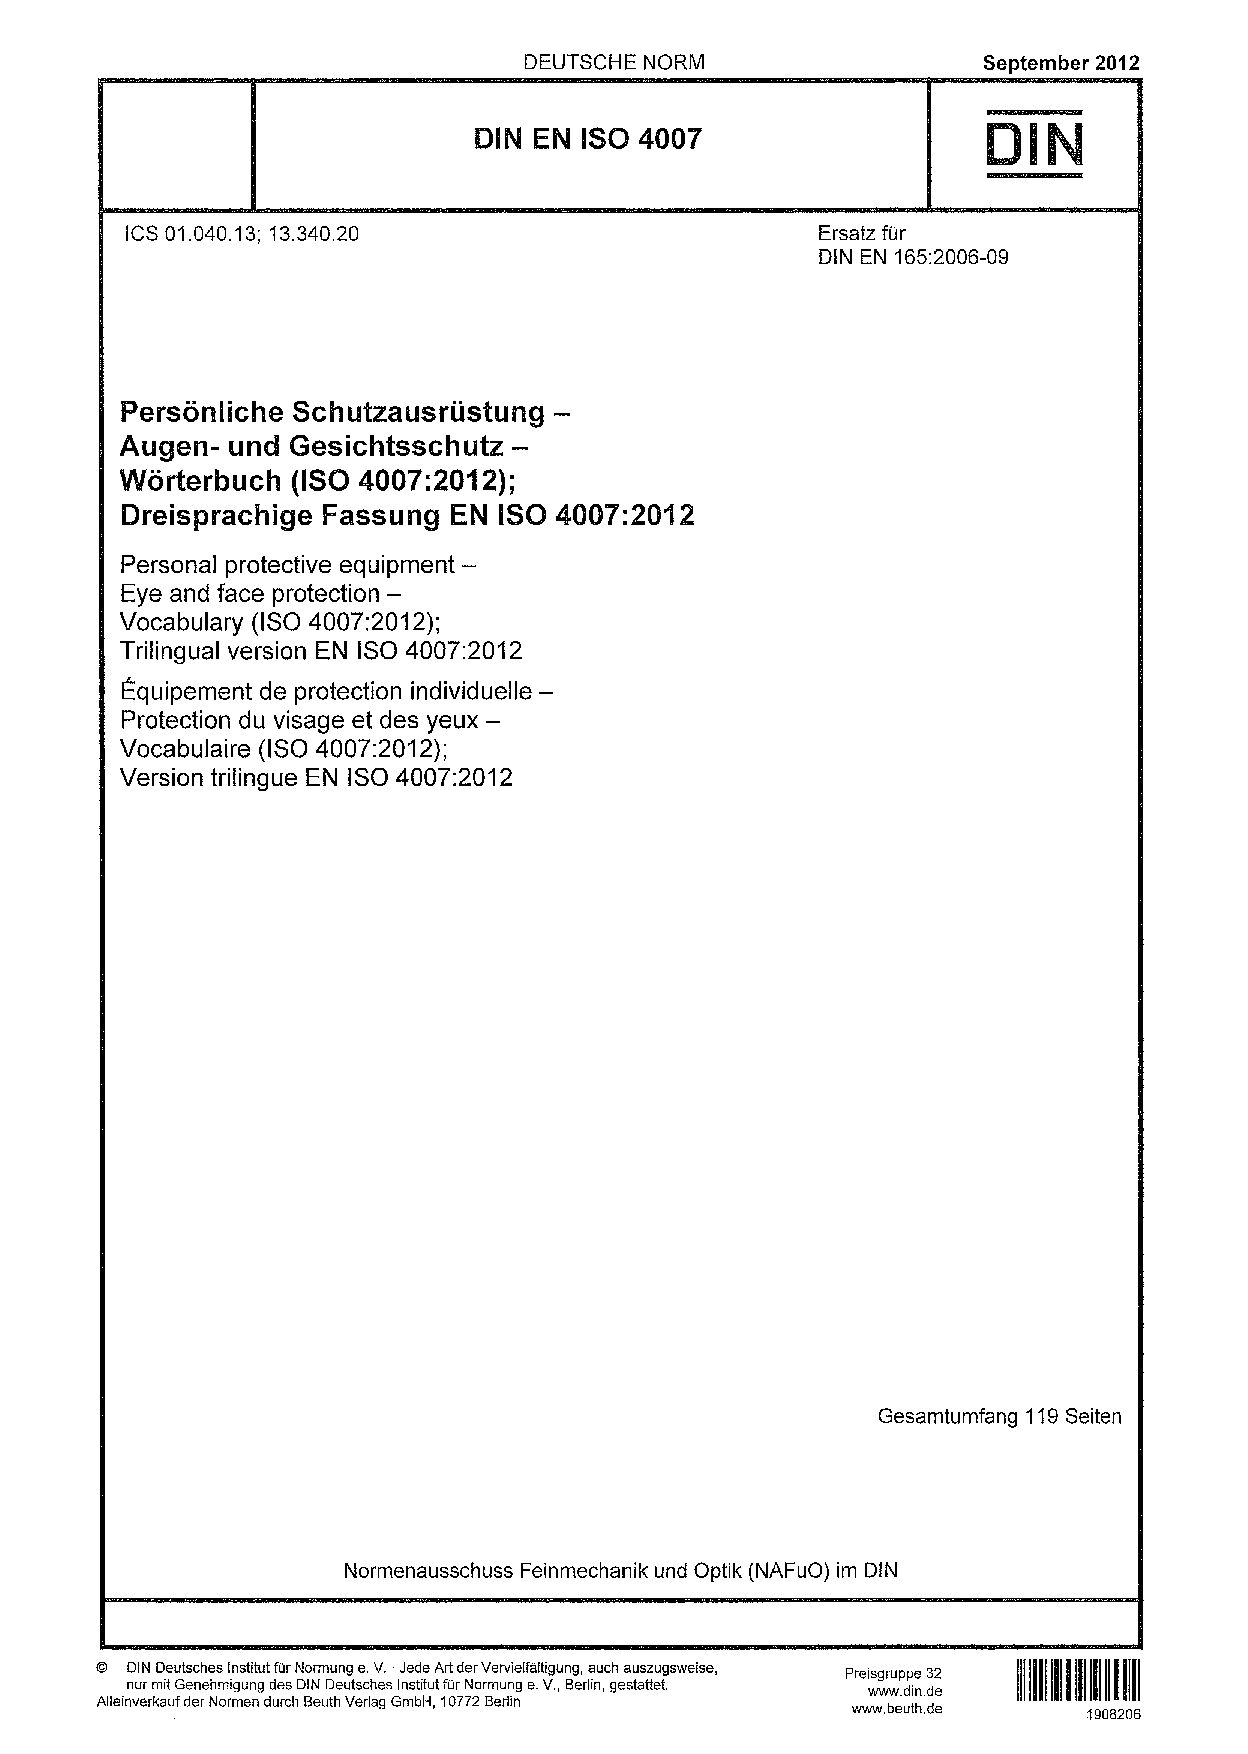 DIN EN ISO 4007-2012